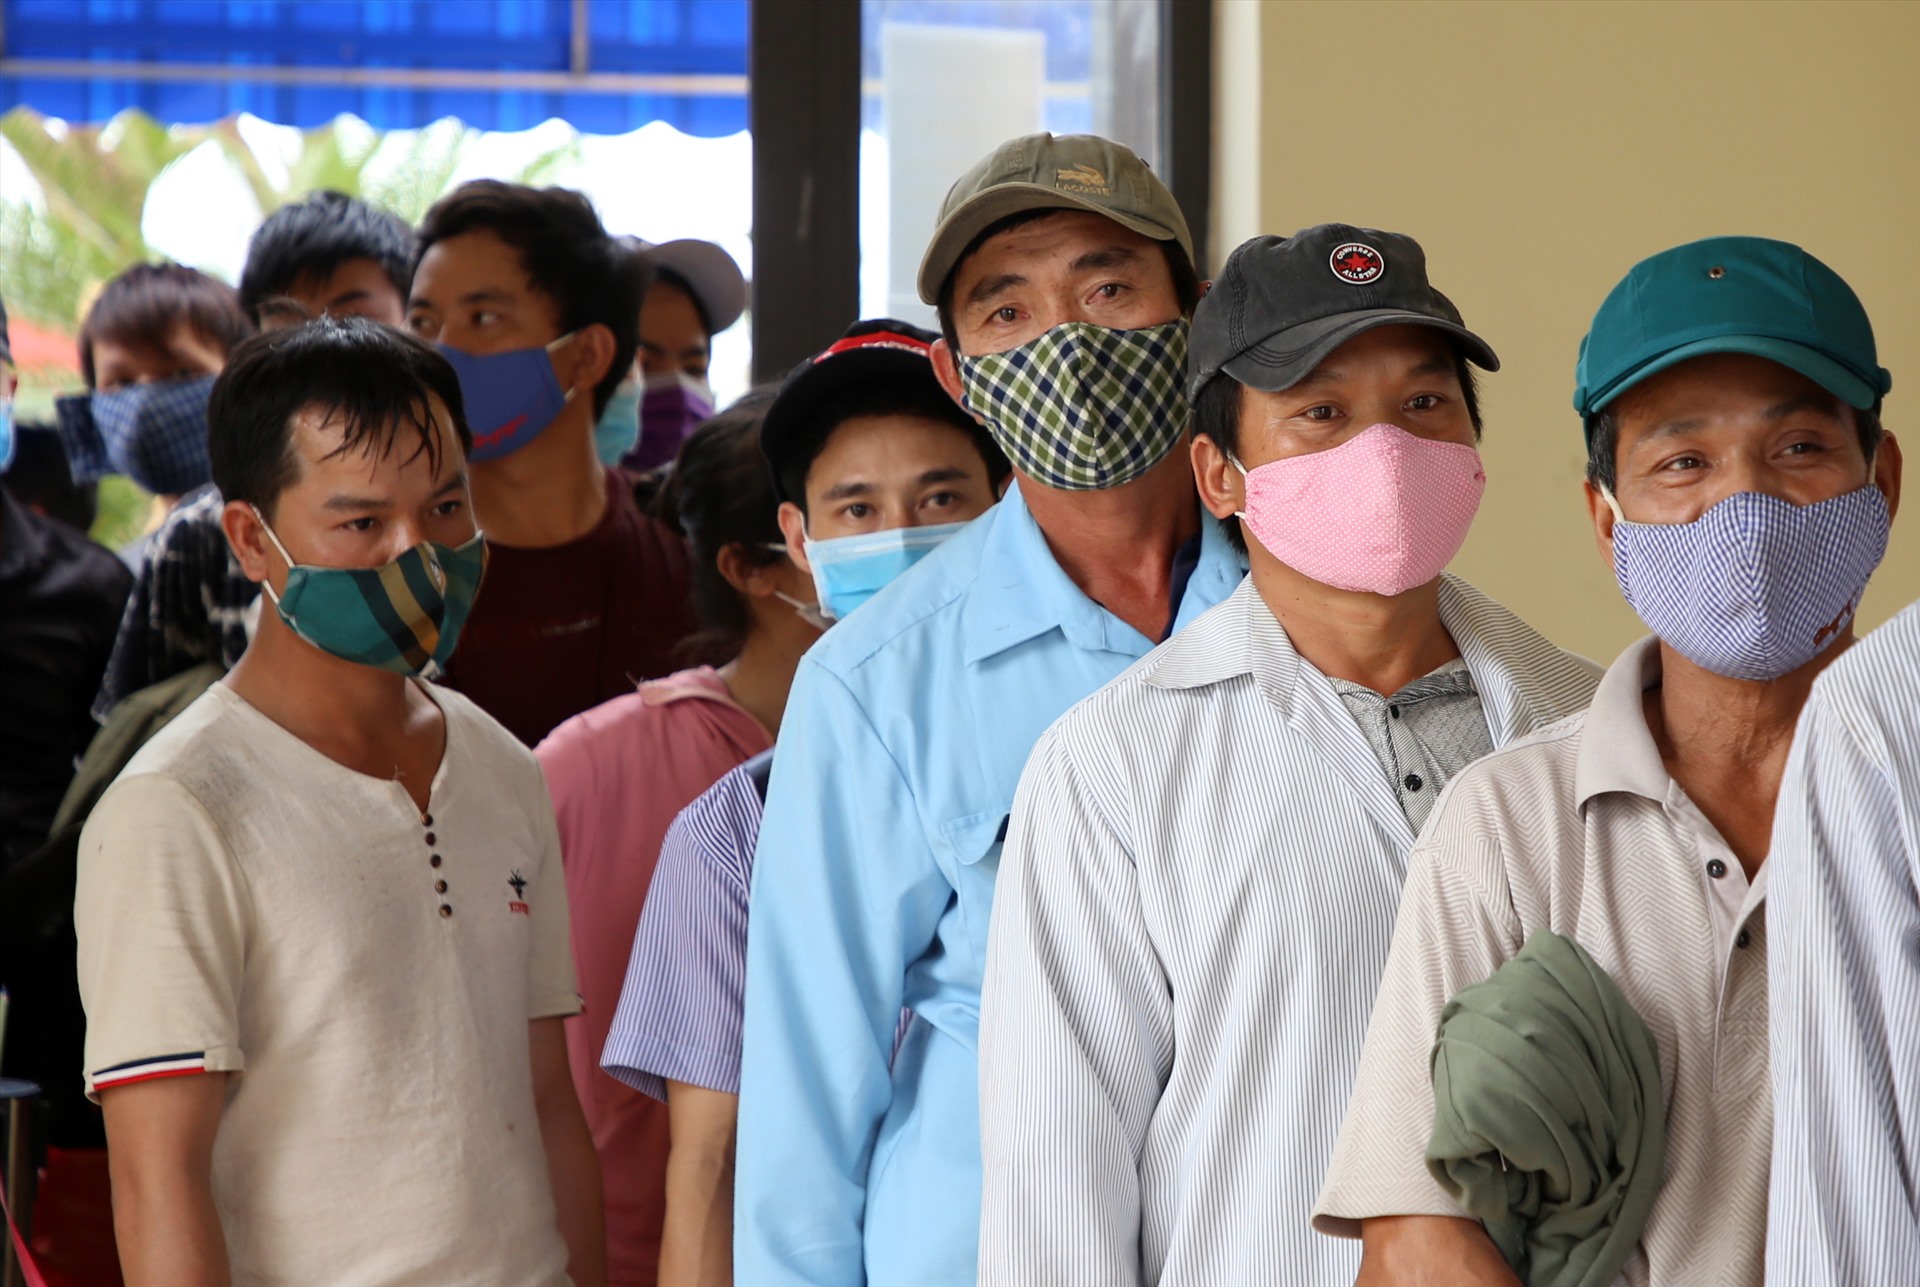 Những người đàn ông này làm việc Lào, nhưng trước thông tin dịch COVID-19 diễn biến phức tạp, họ đã trở về quê. Dù việc xếp hàng đợi làm thủ tục khá lâu, nhưng ai cũng chấp hành, vui mừng vì đến quê nhà an toàn.